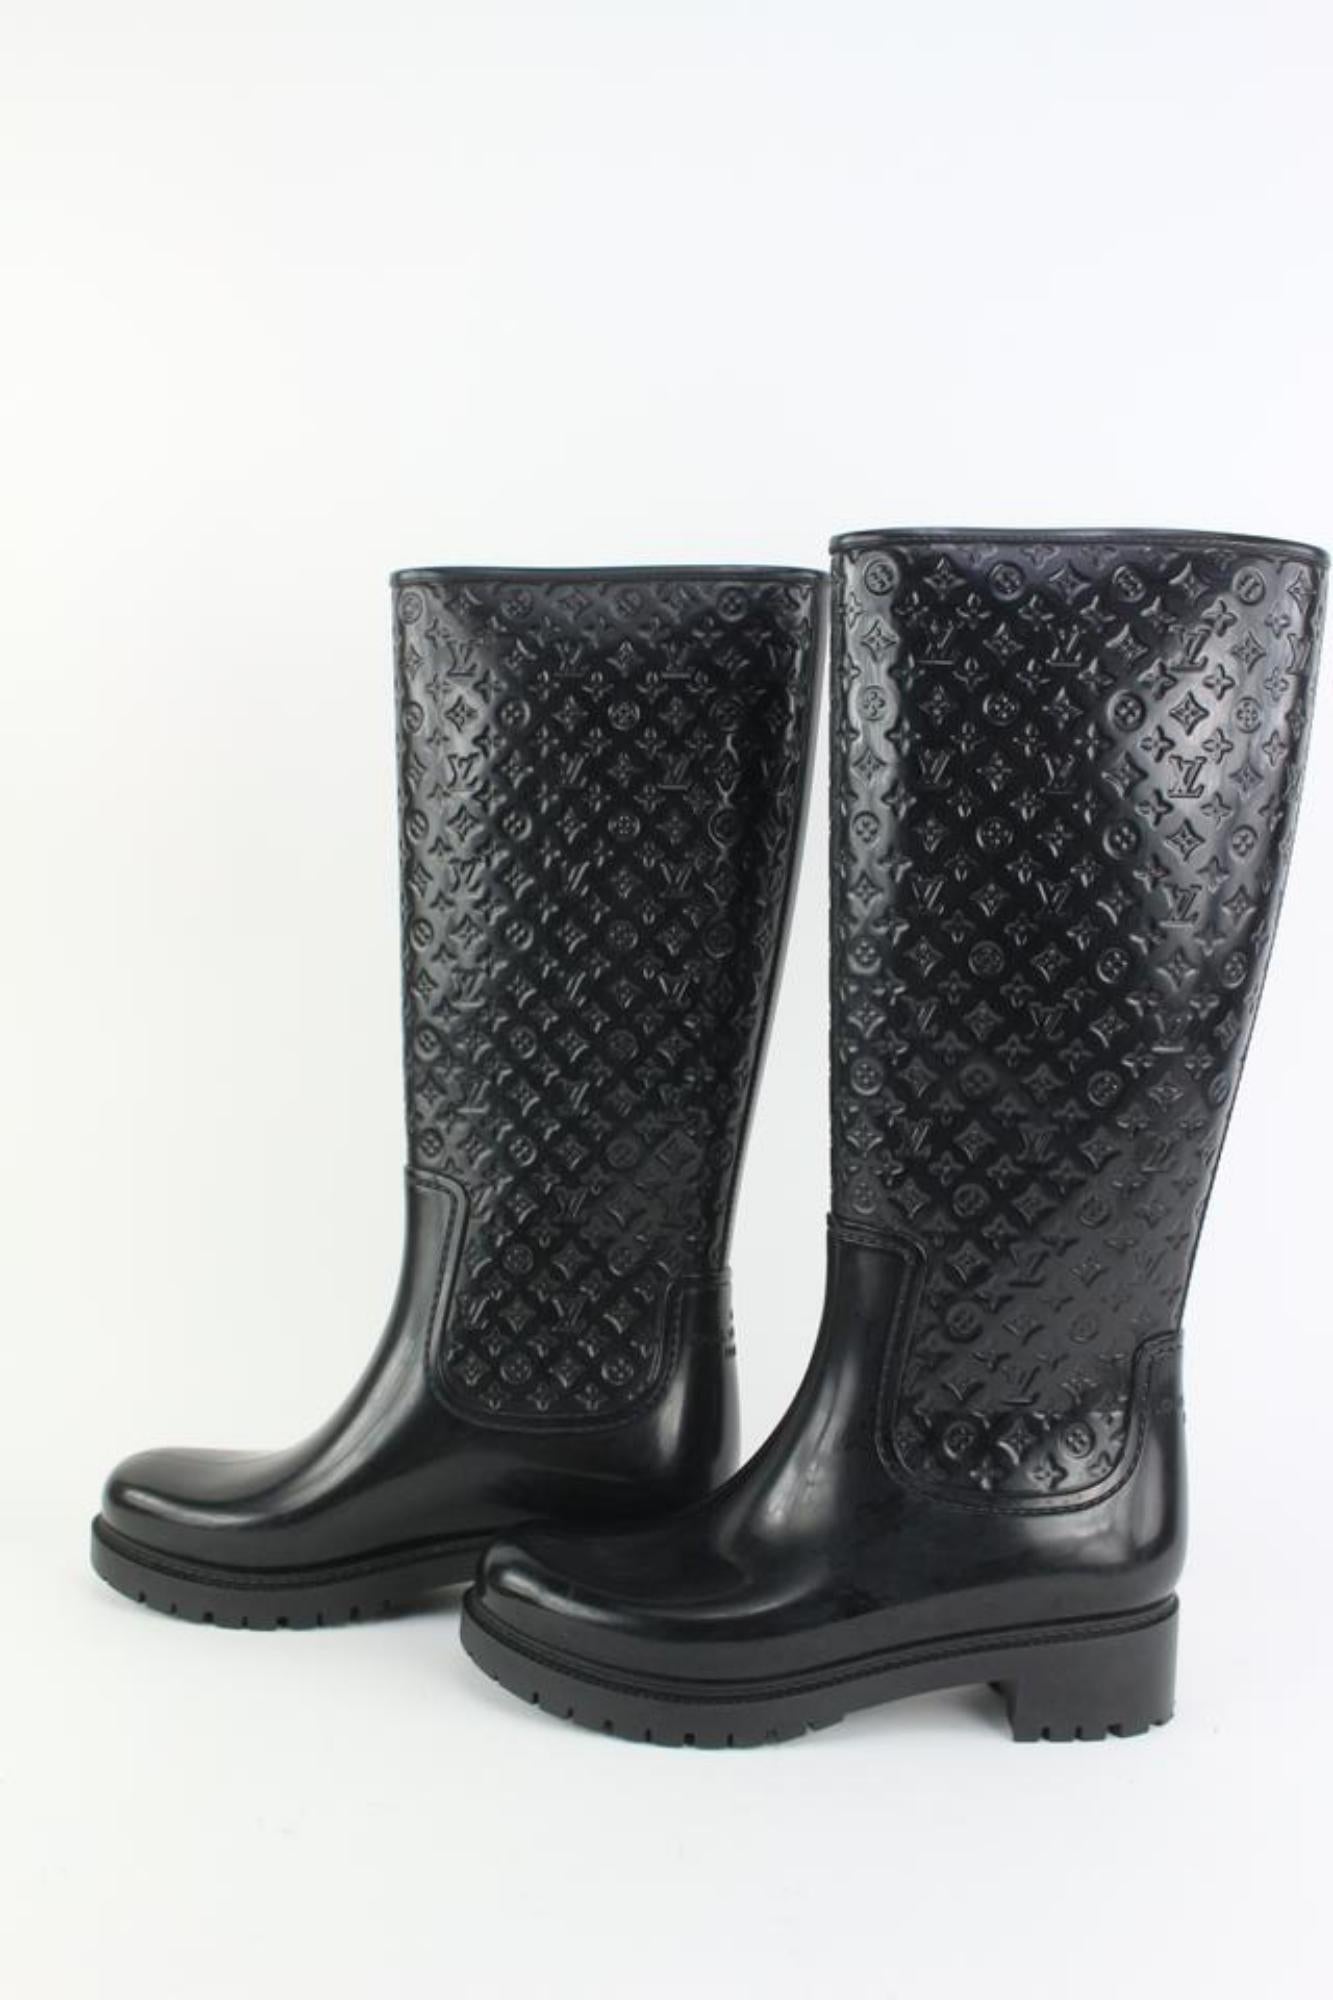 Louis Vuitton Women's 36 Black Rubber Rainboots Tall Rain Boots 111lv9 For Sale 5